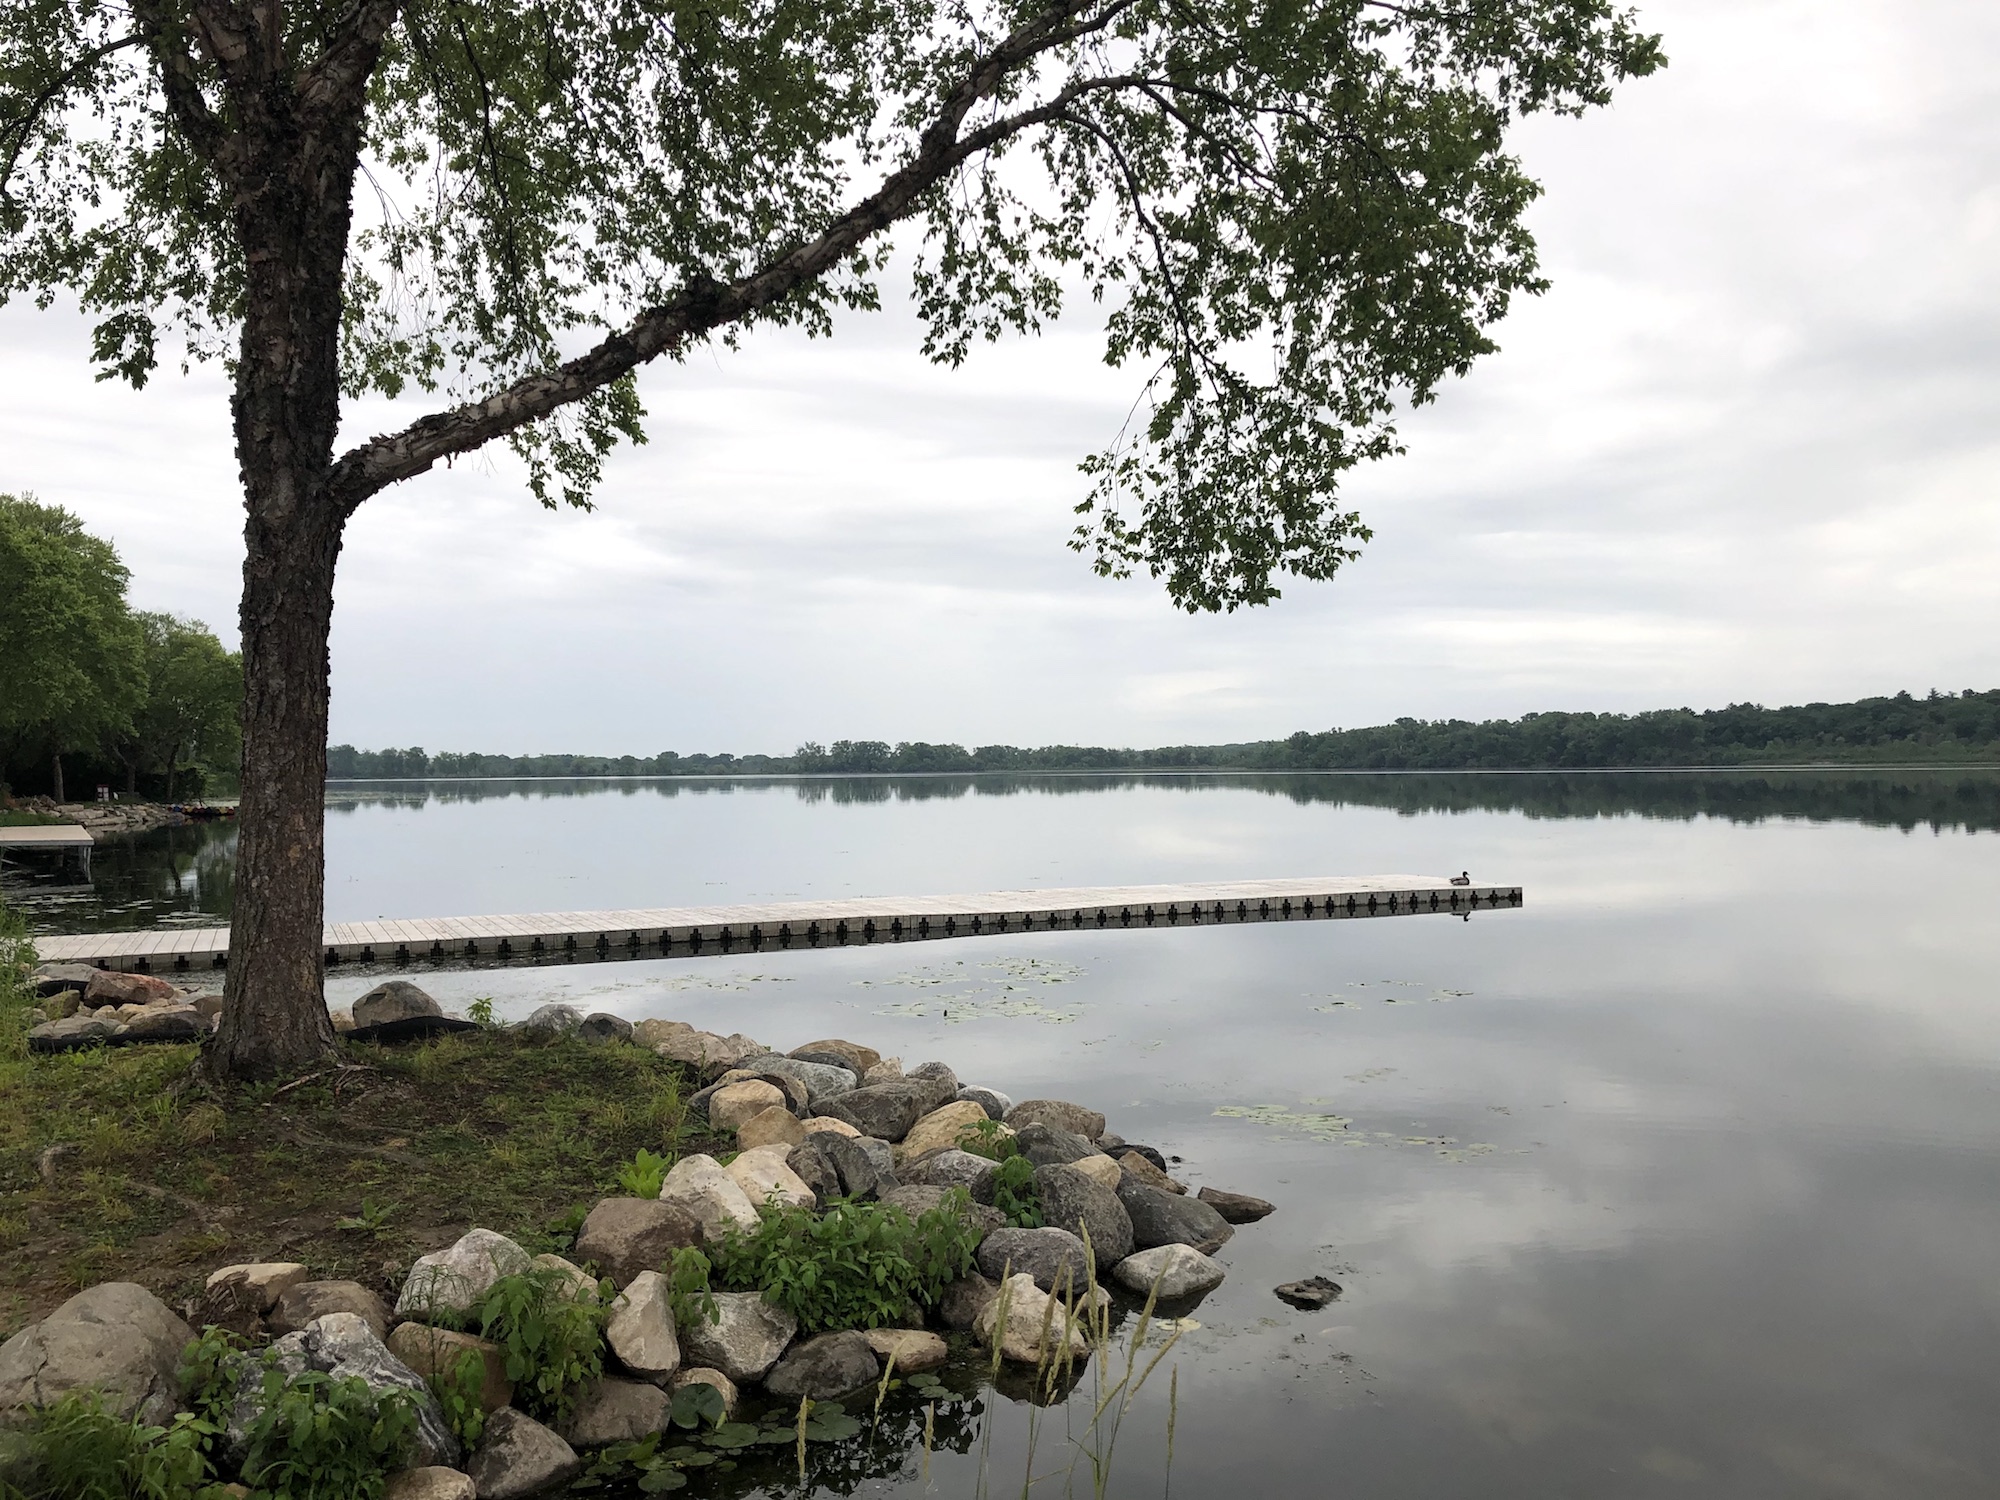 Lake Wingra on June 24, 2019.